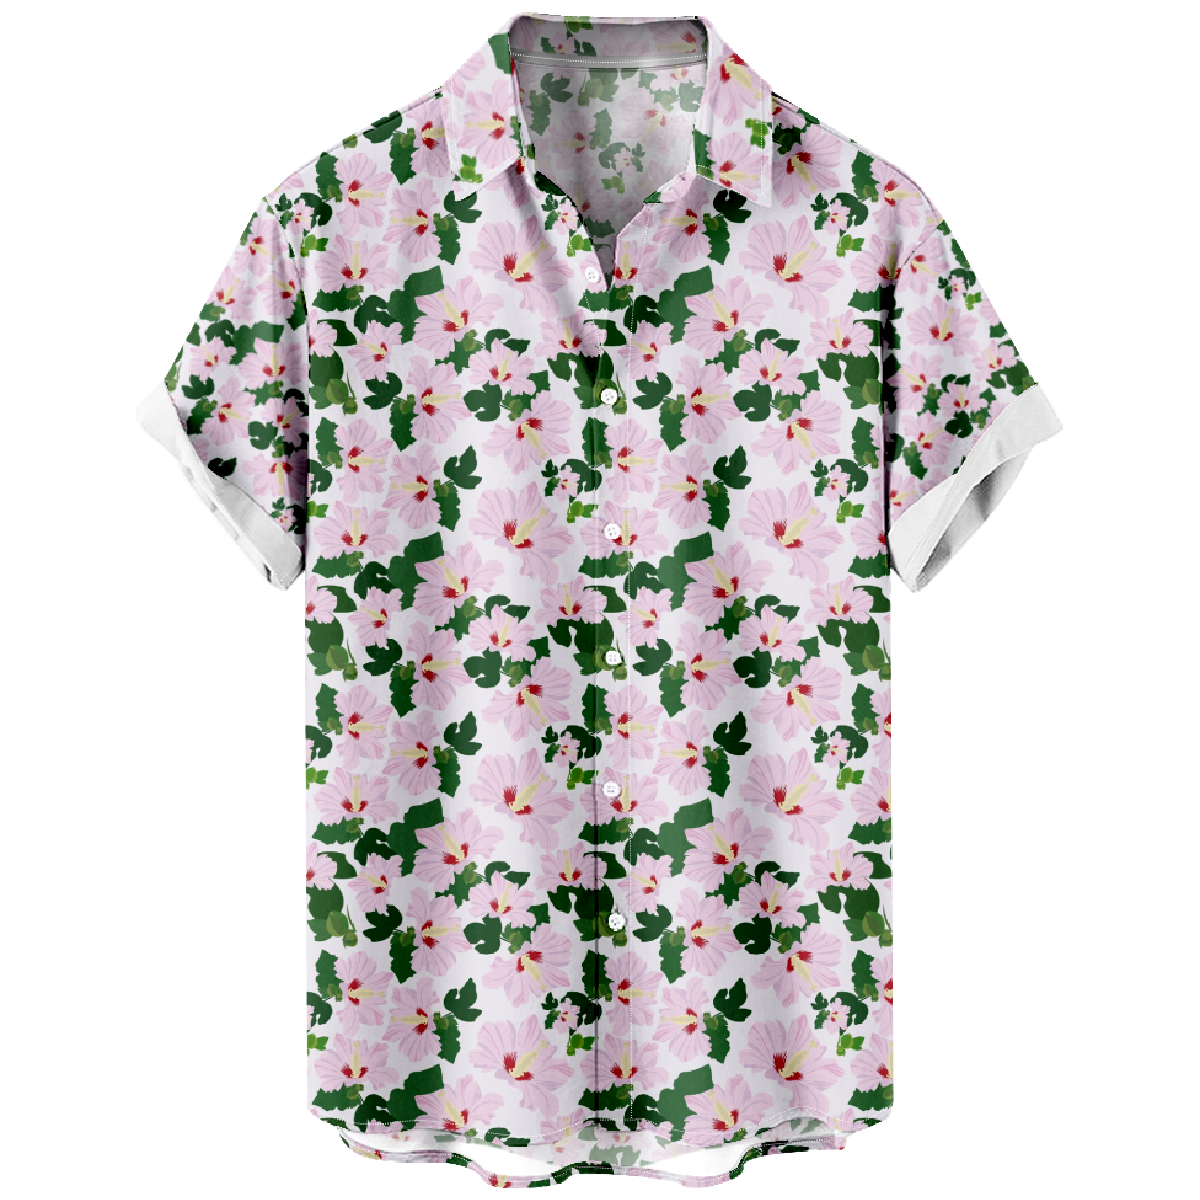 Hibiscus Flower Pattern Print Short Sleeve Shirt Men's Hawaiian Button Shirt 